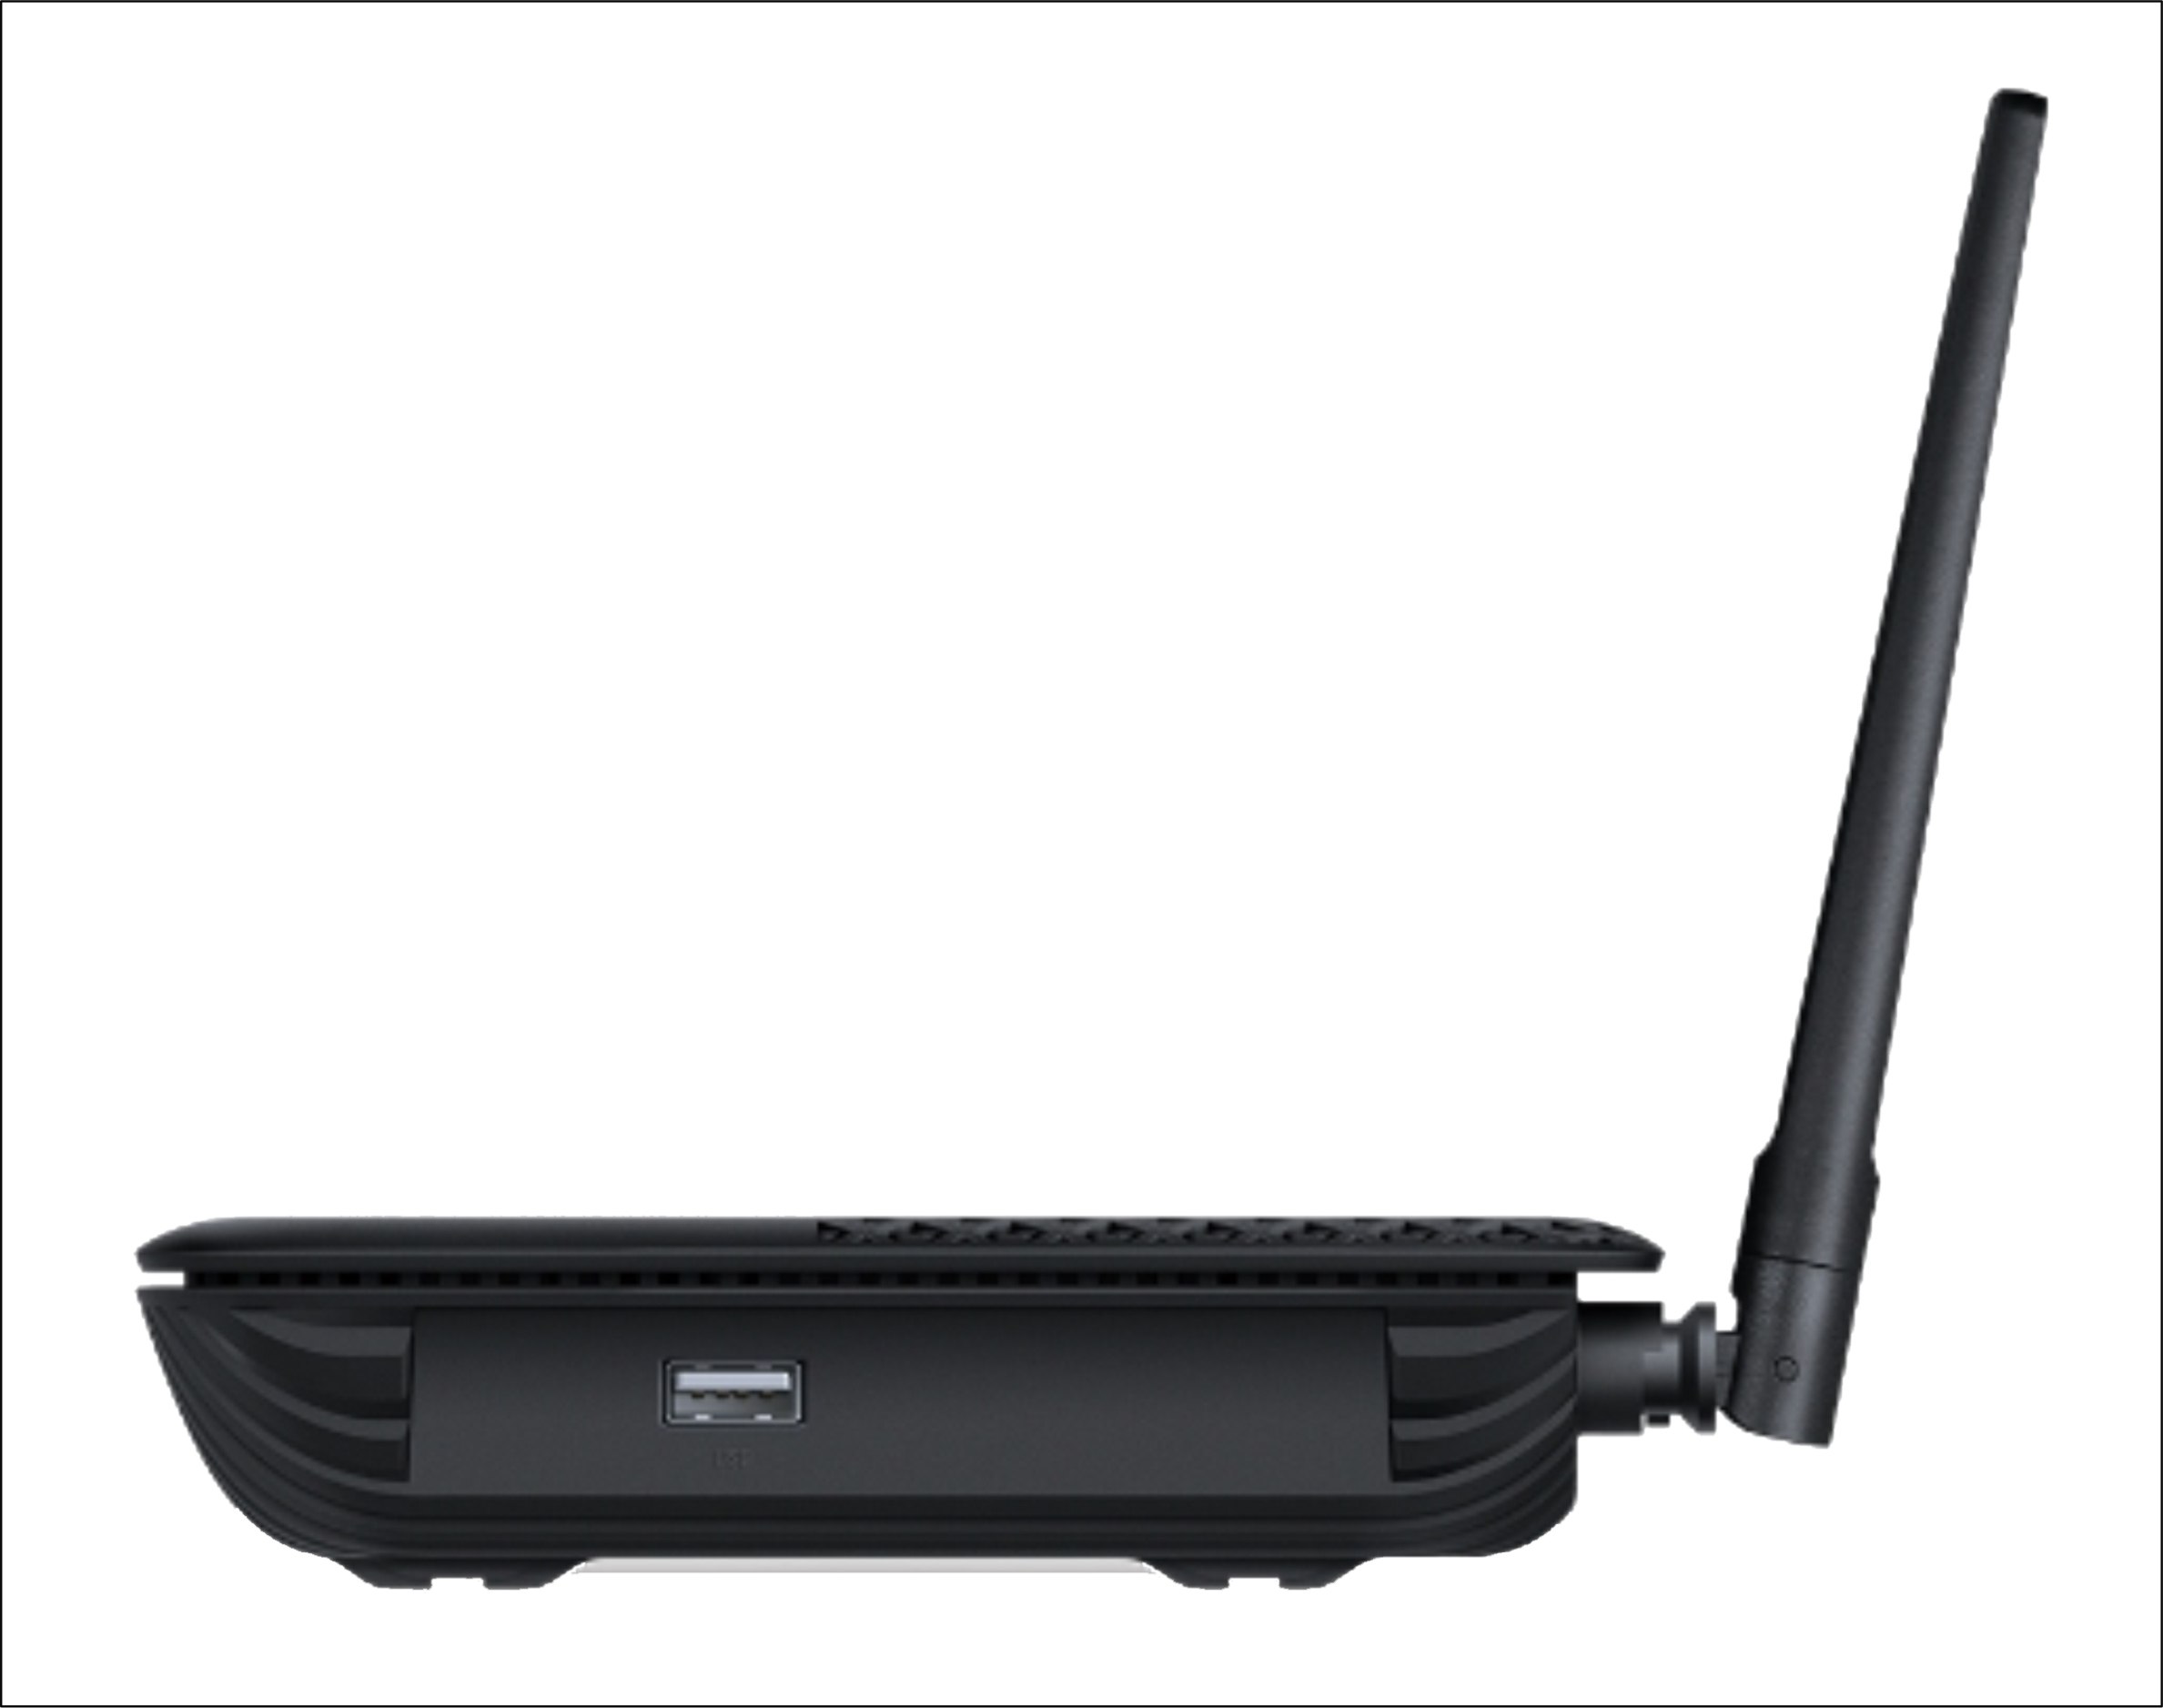 TP-Link Archer XR500v 1200 Mbps Dual Band Router